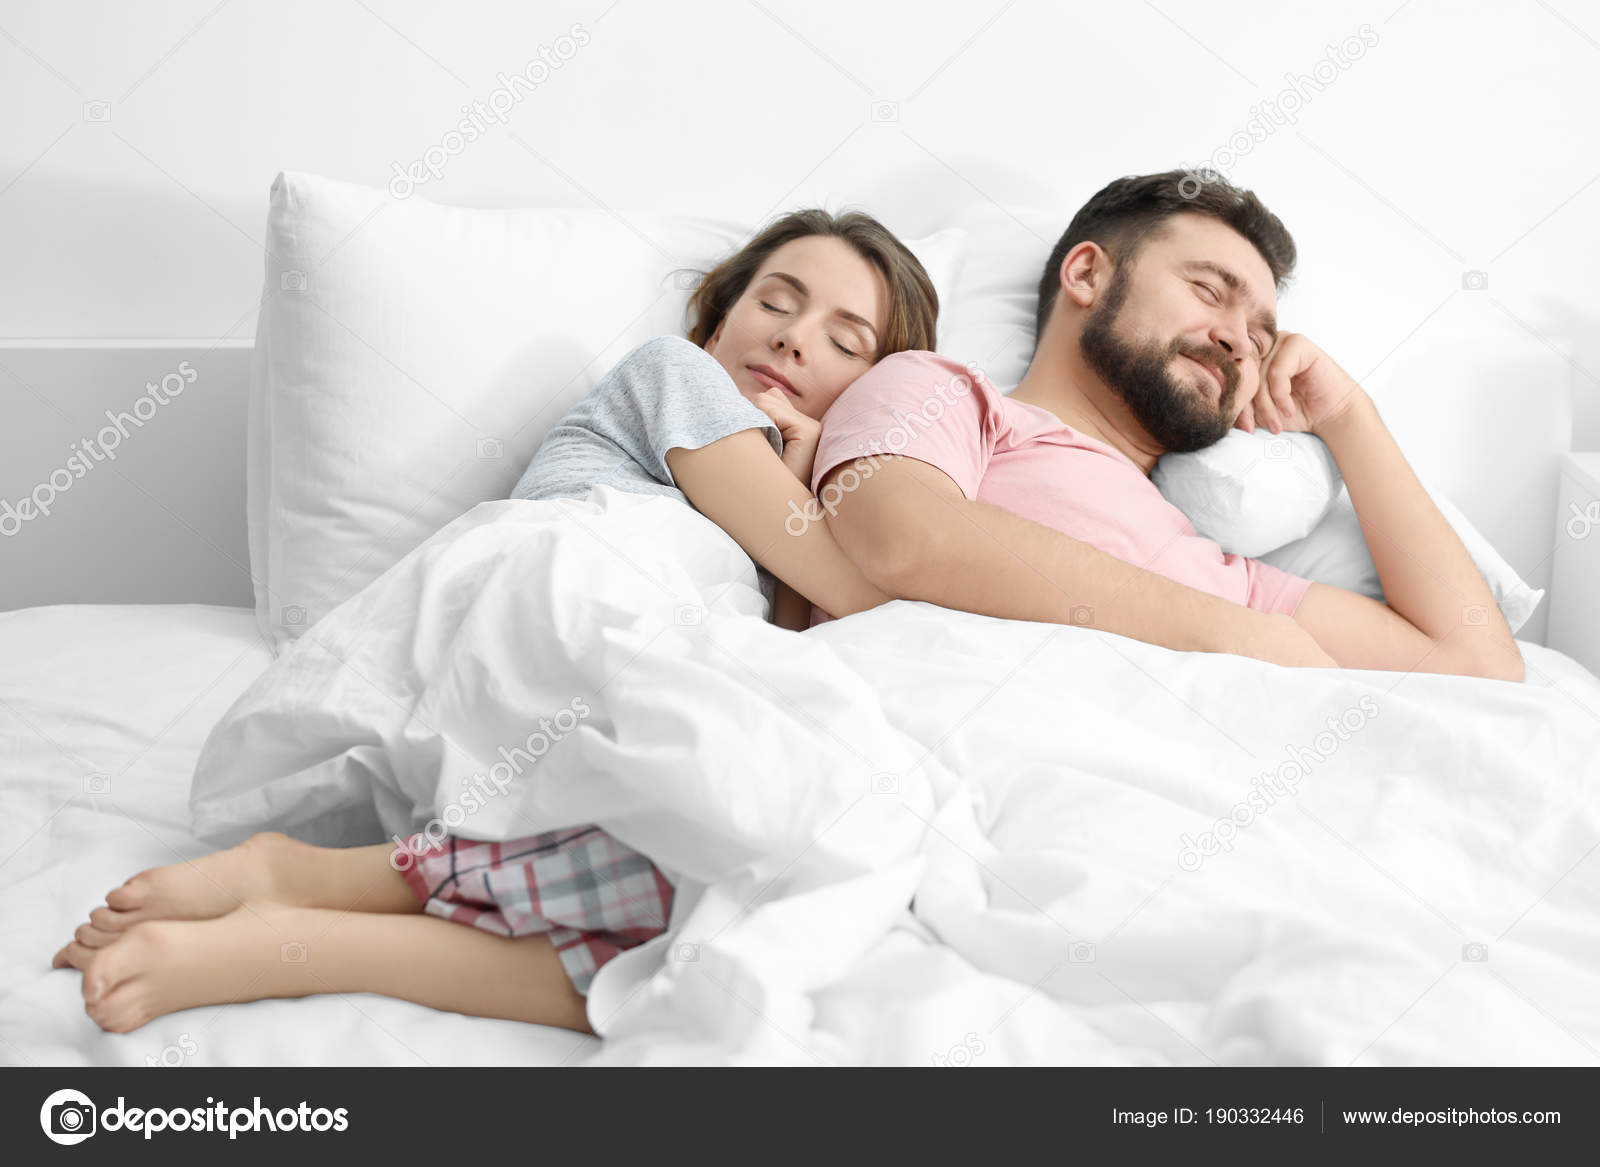 Sleeping Wife's